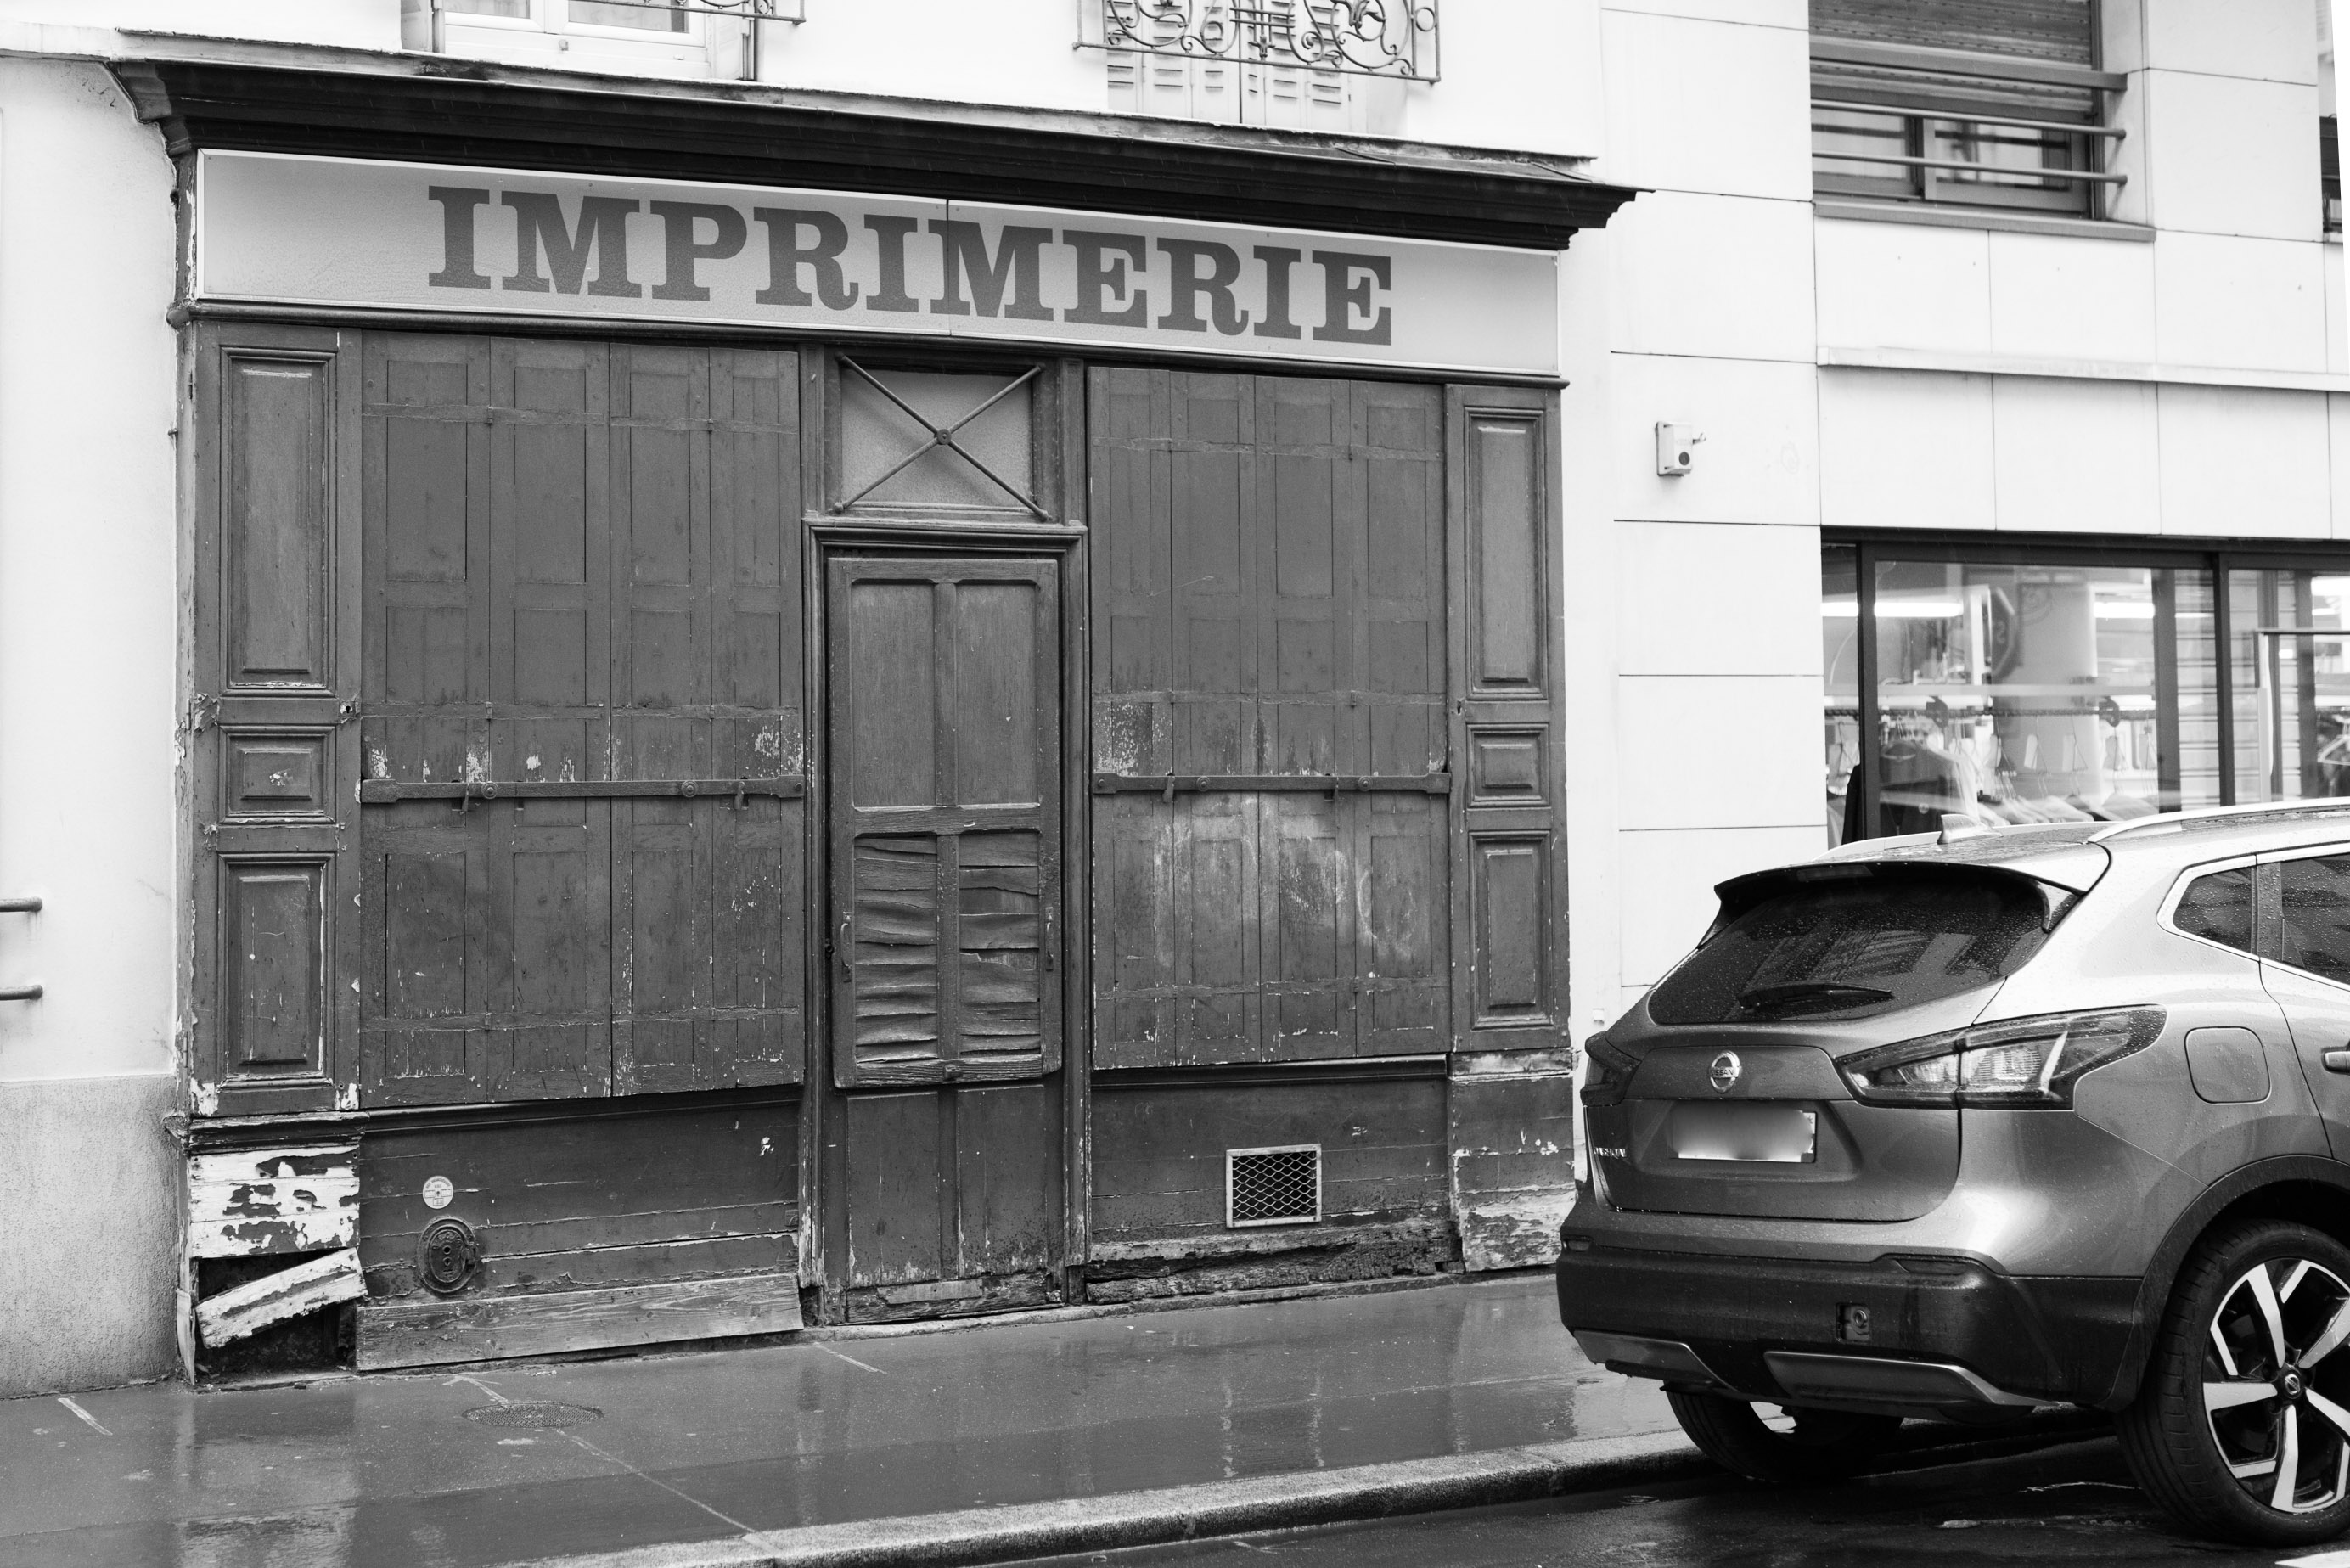  Alte Fassade einer Druckerei in der Rue Edouard Vaillant in Levallois-Perret